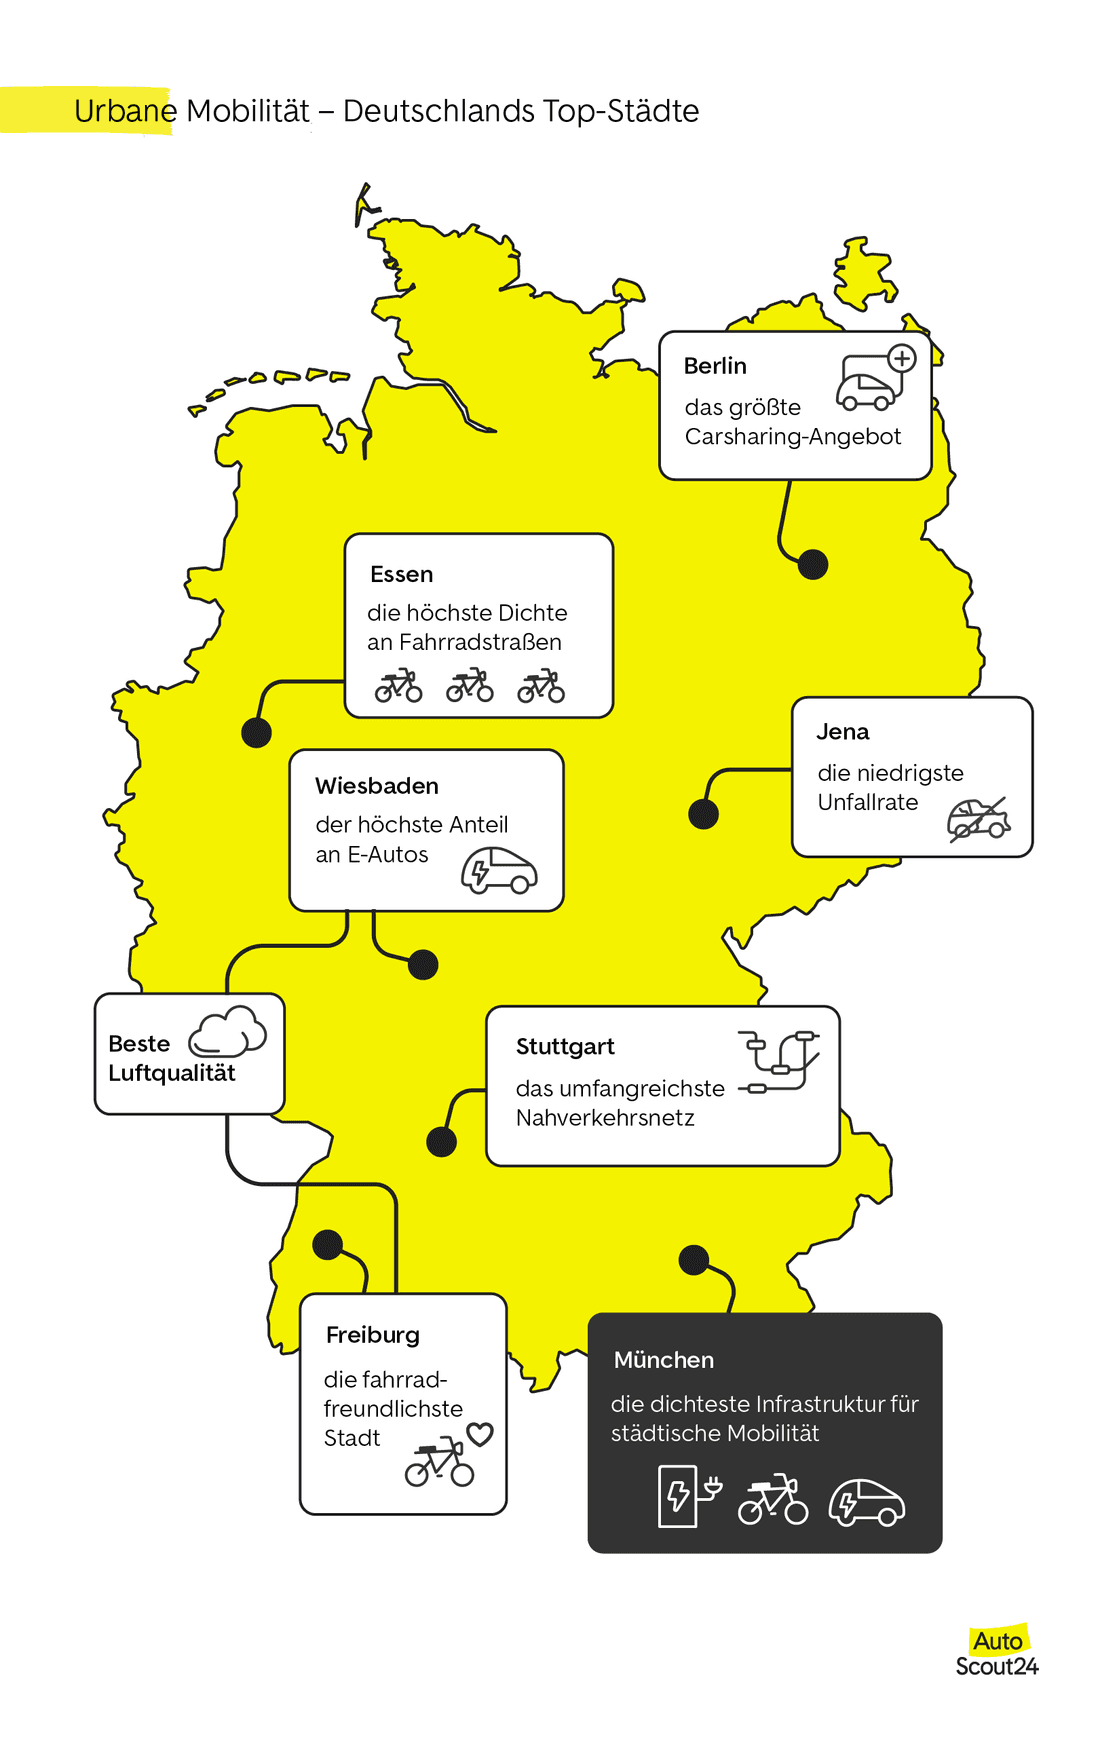 urbane mobilitaet- deutschlands top-staedte